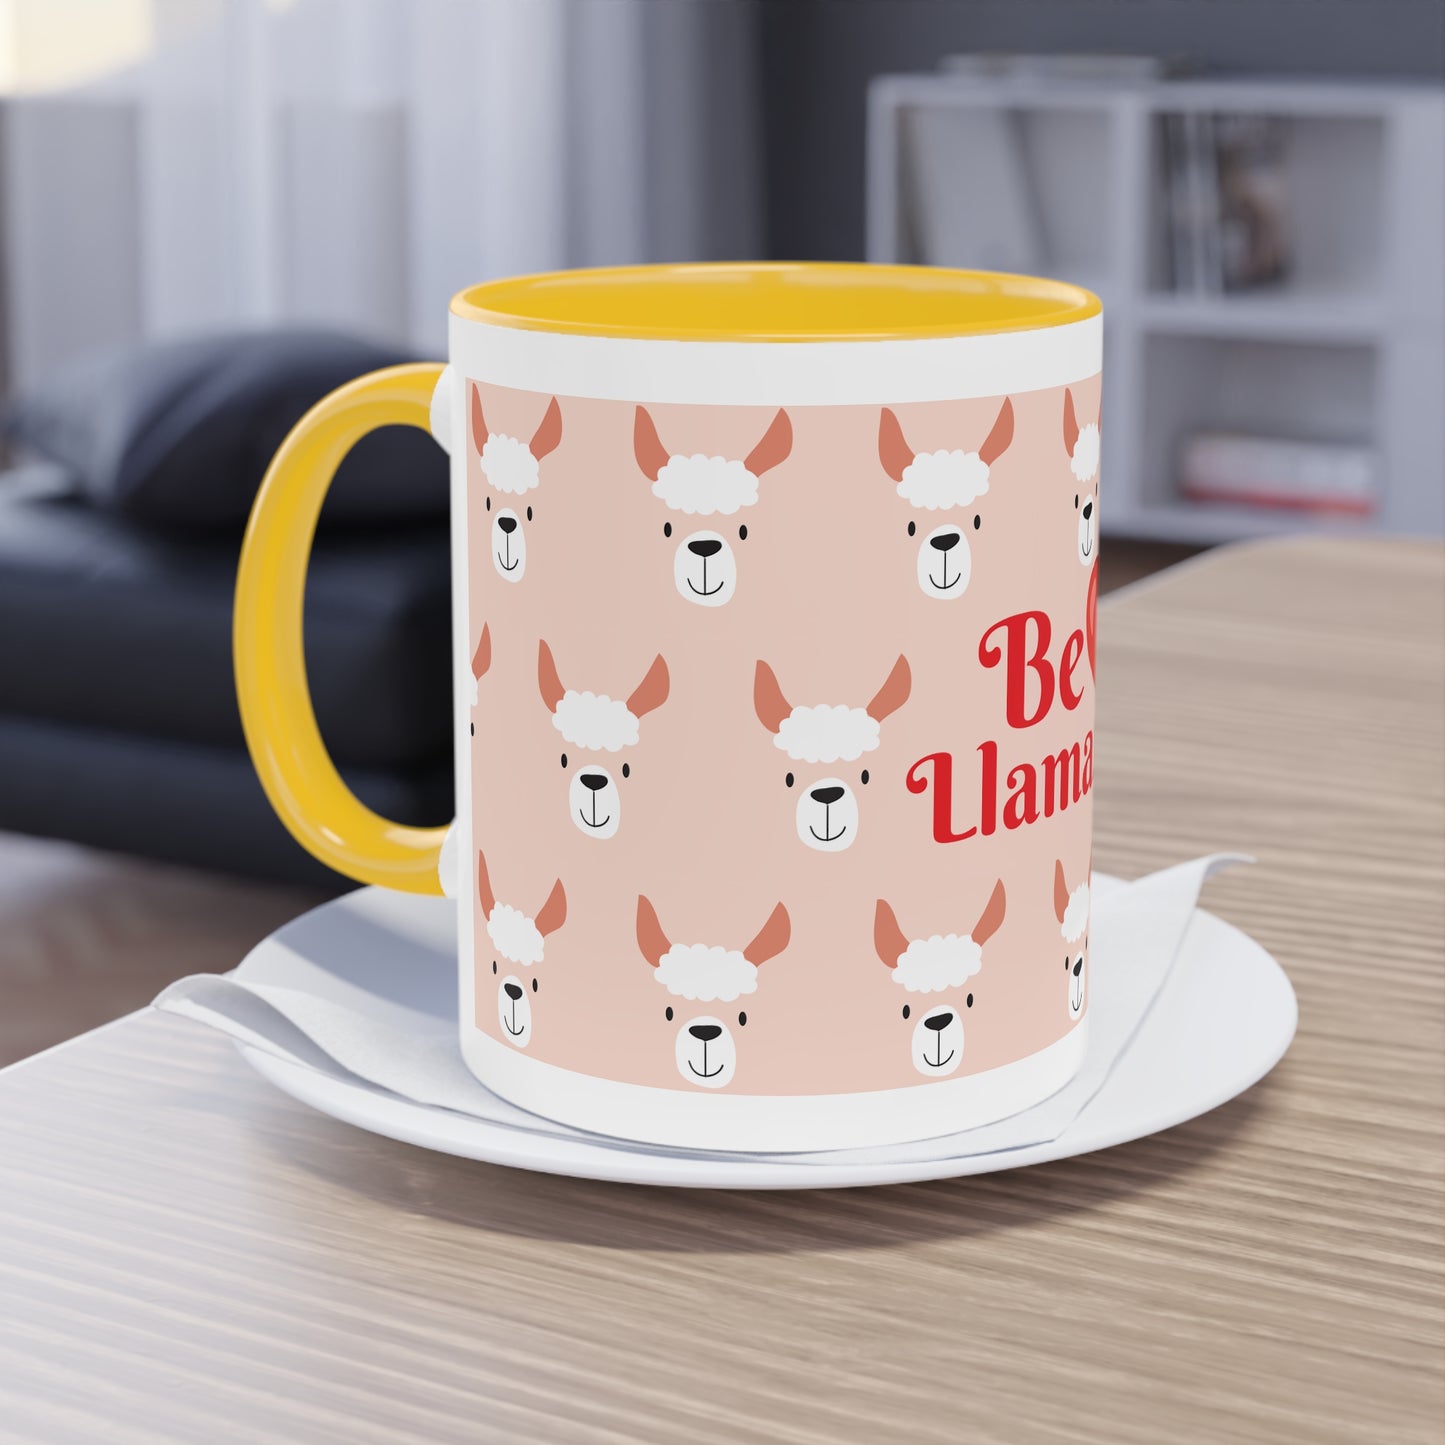 Two-Tone Coffee Mug, 11oz